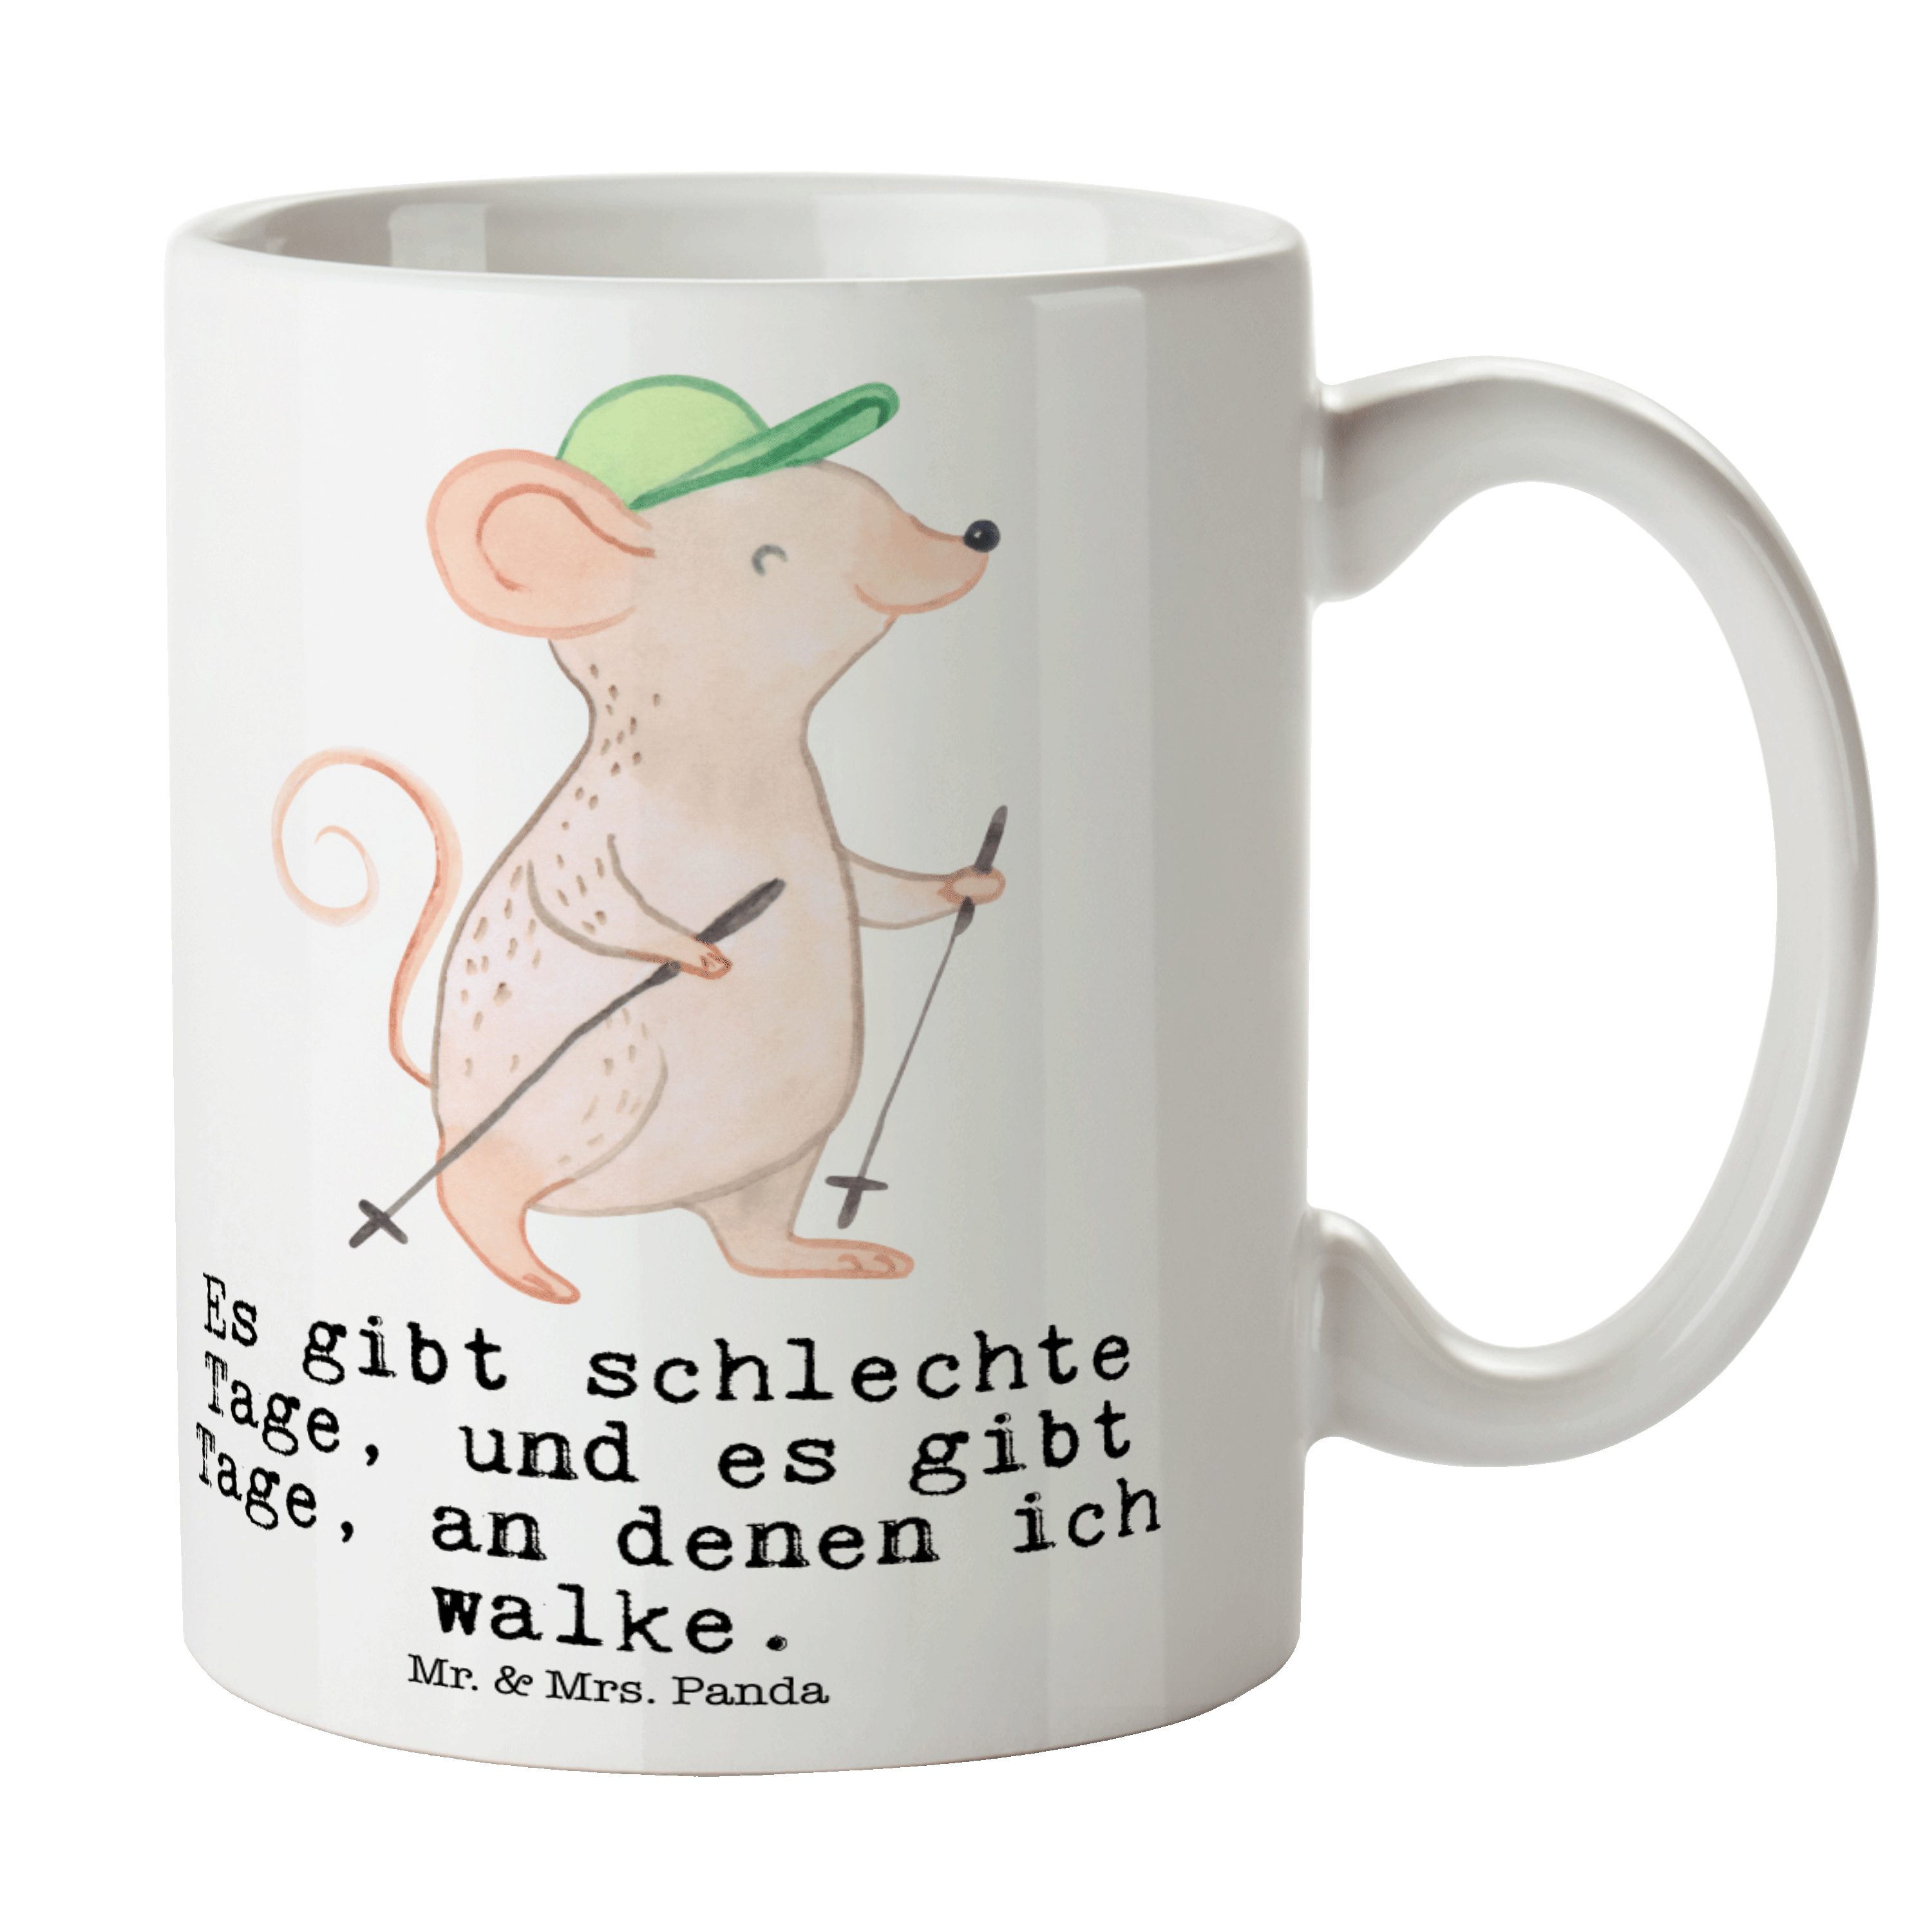 Mr. & Mrs. Panda Tasse Maus Walking Tage - Weiß - Geschenk, Gewinn, Tasse Sprüche, Dankeschö, Keramik